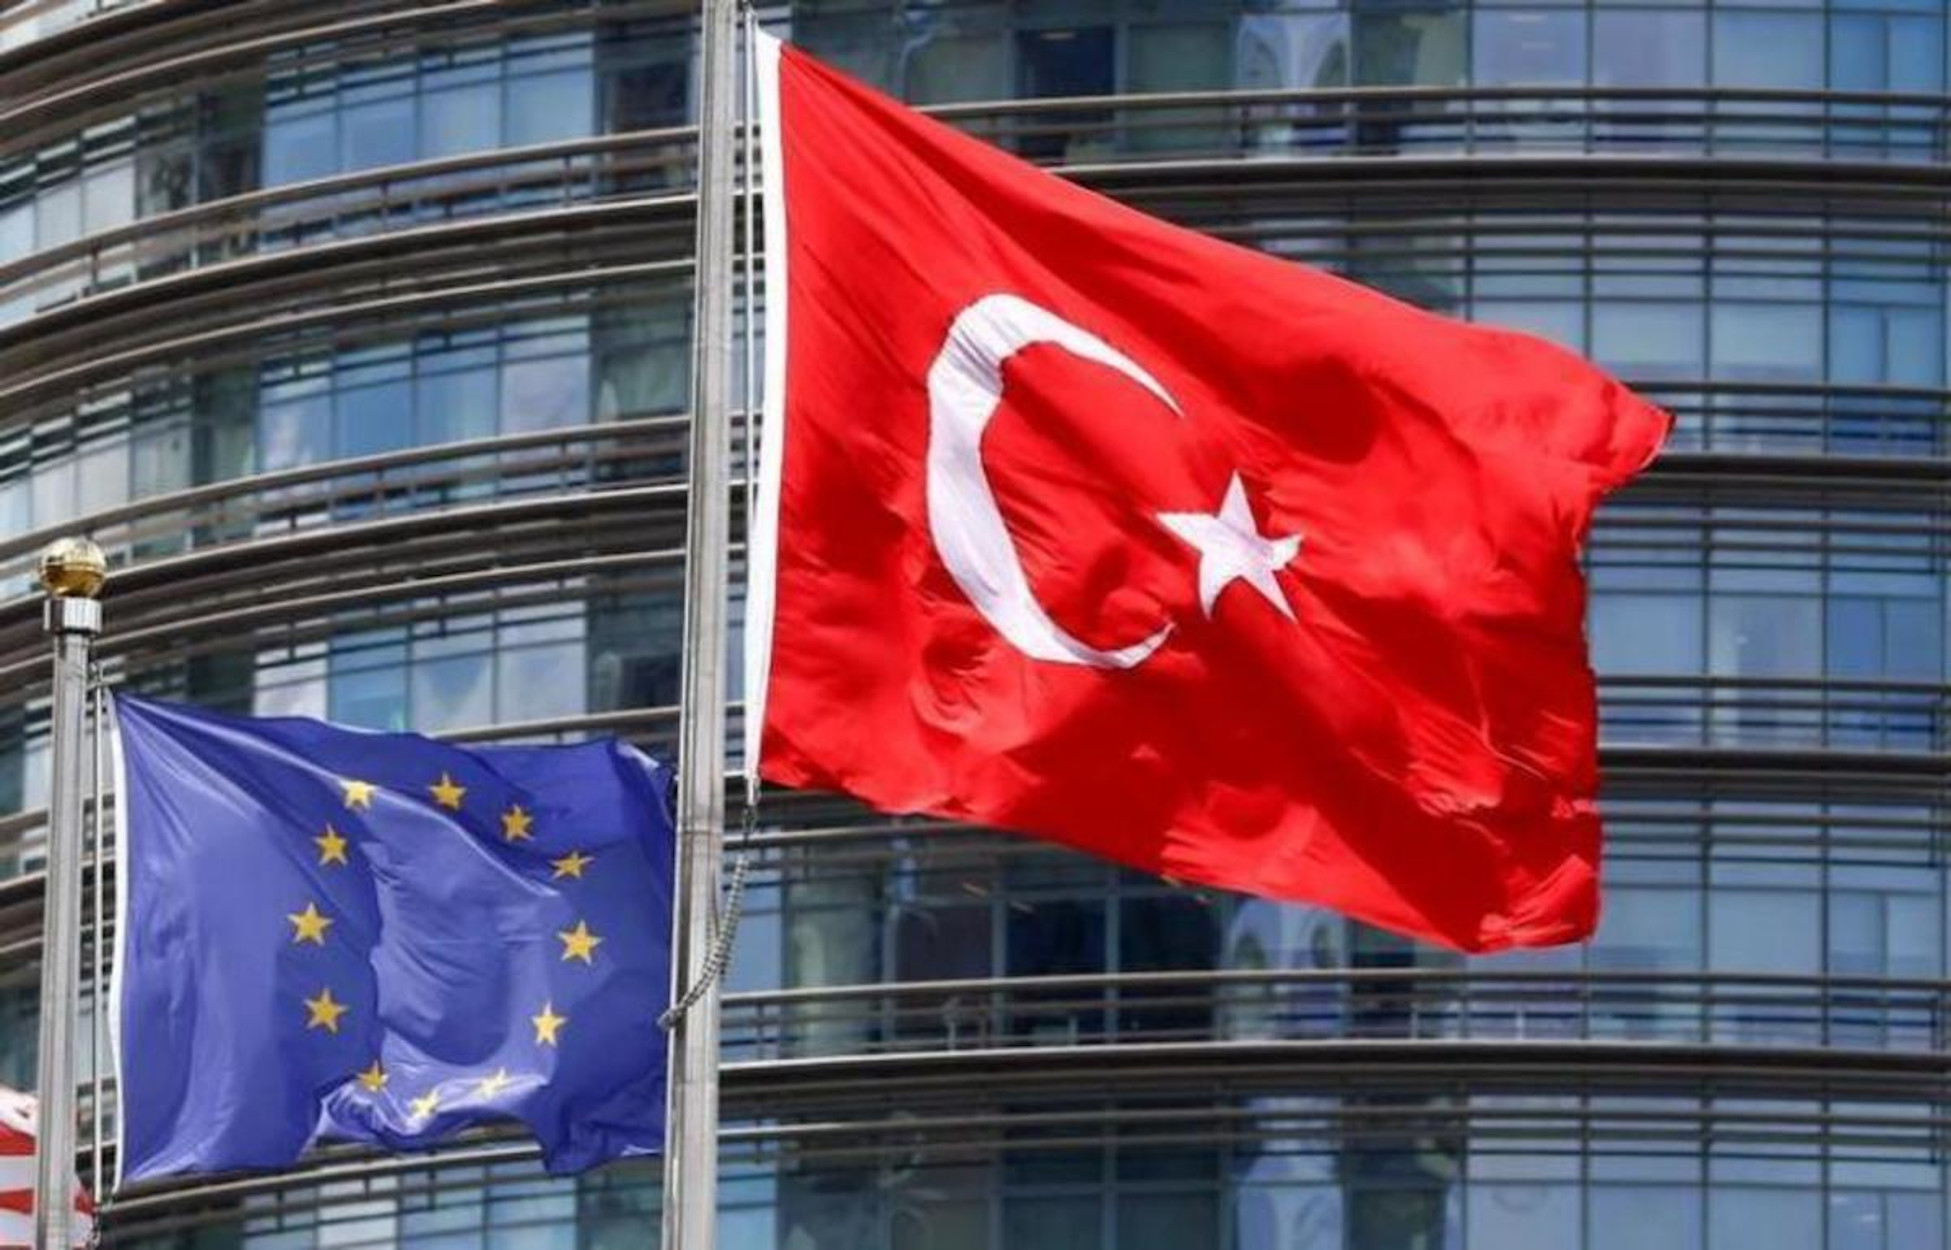 Τουρκία: Οργή για το ψήφισμα του Ευρωκοινοβουλίου – “Εκβιαστικό, θέλει να μας βάλει σε ομηρία”